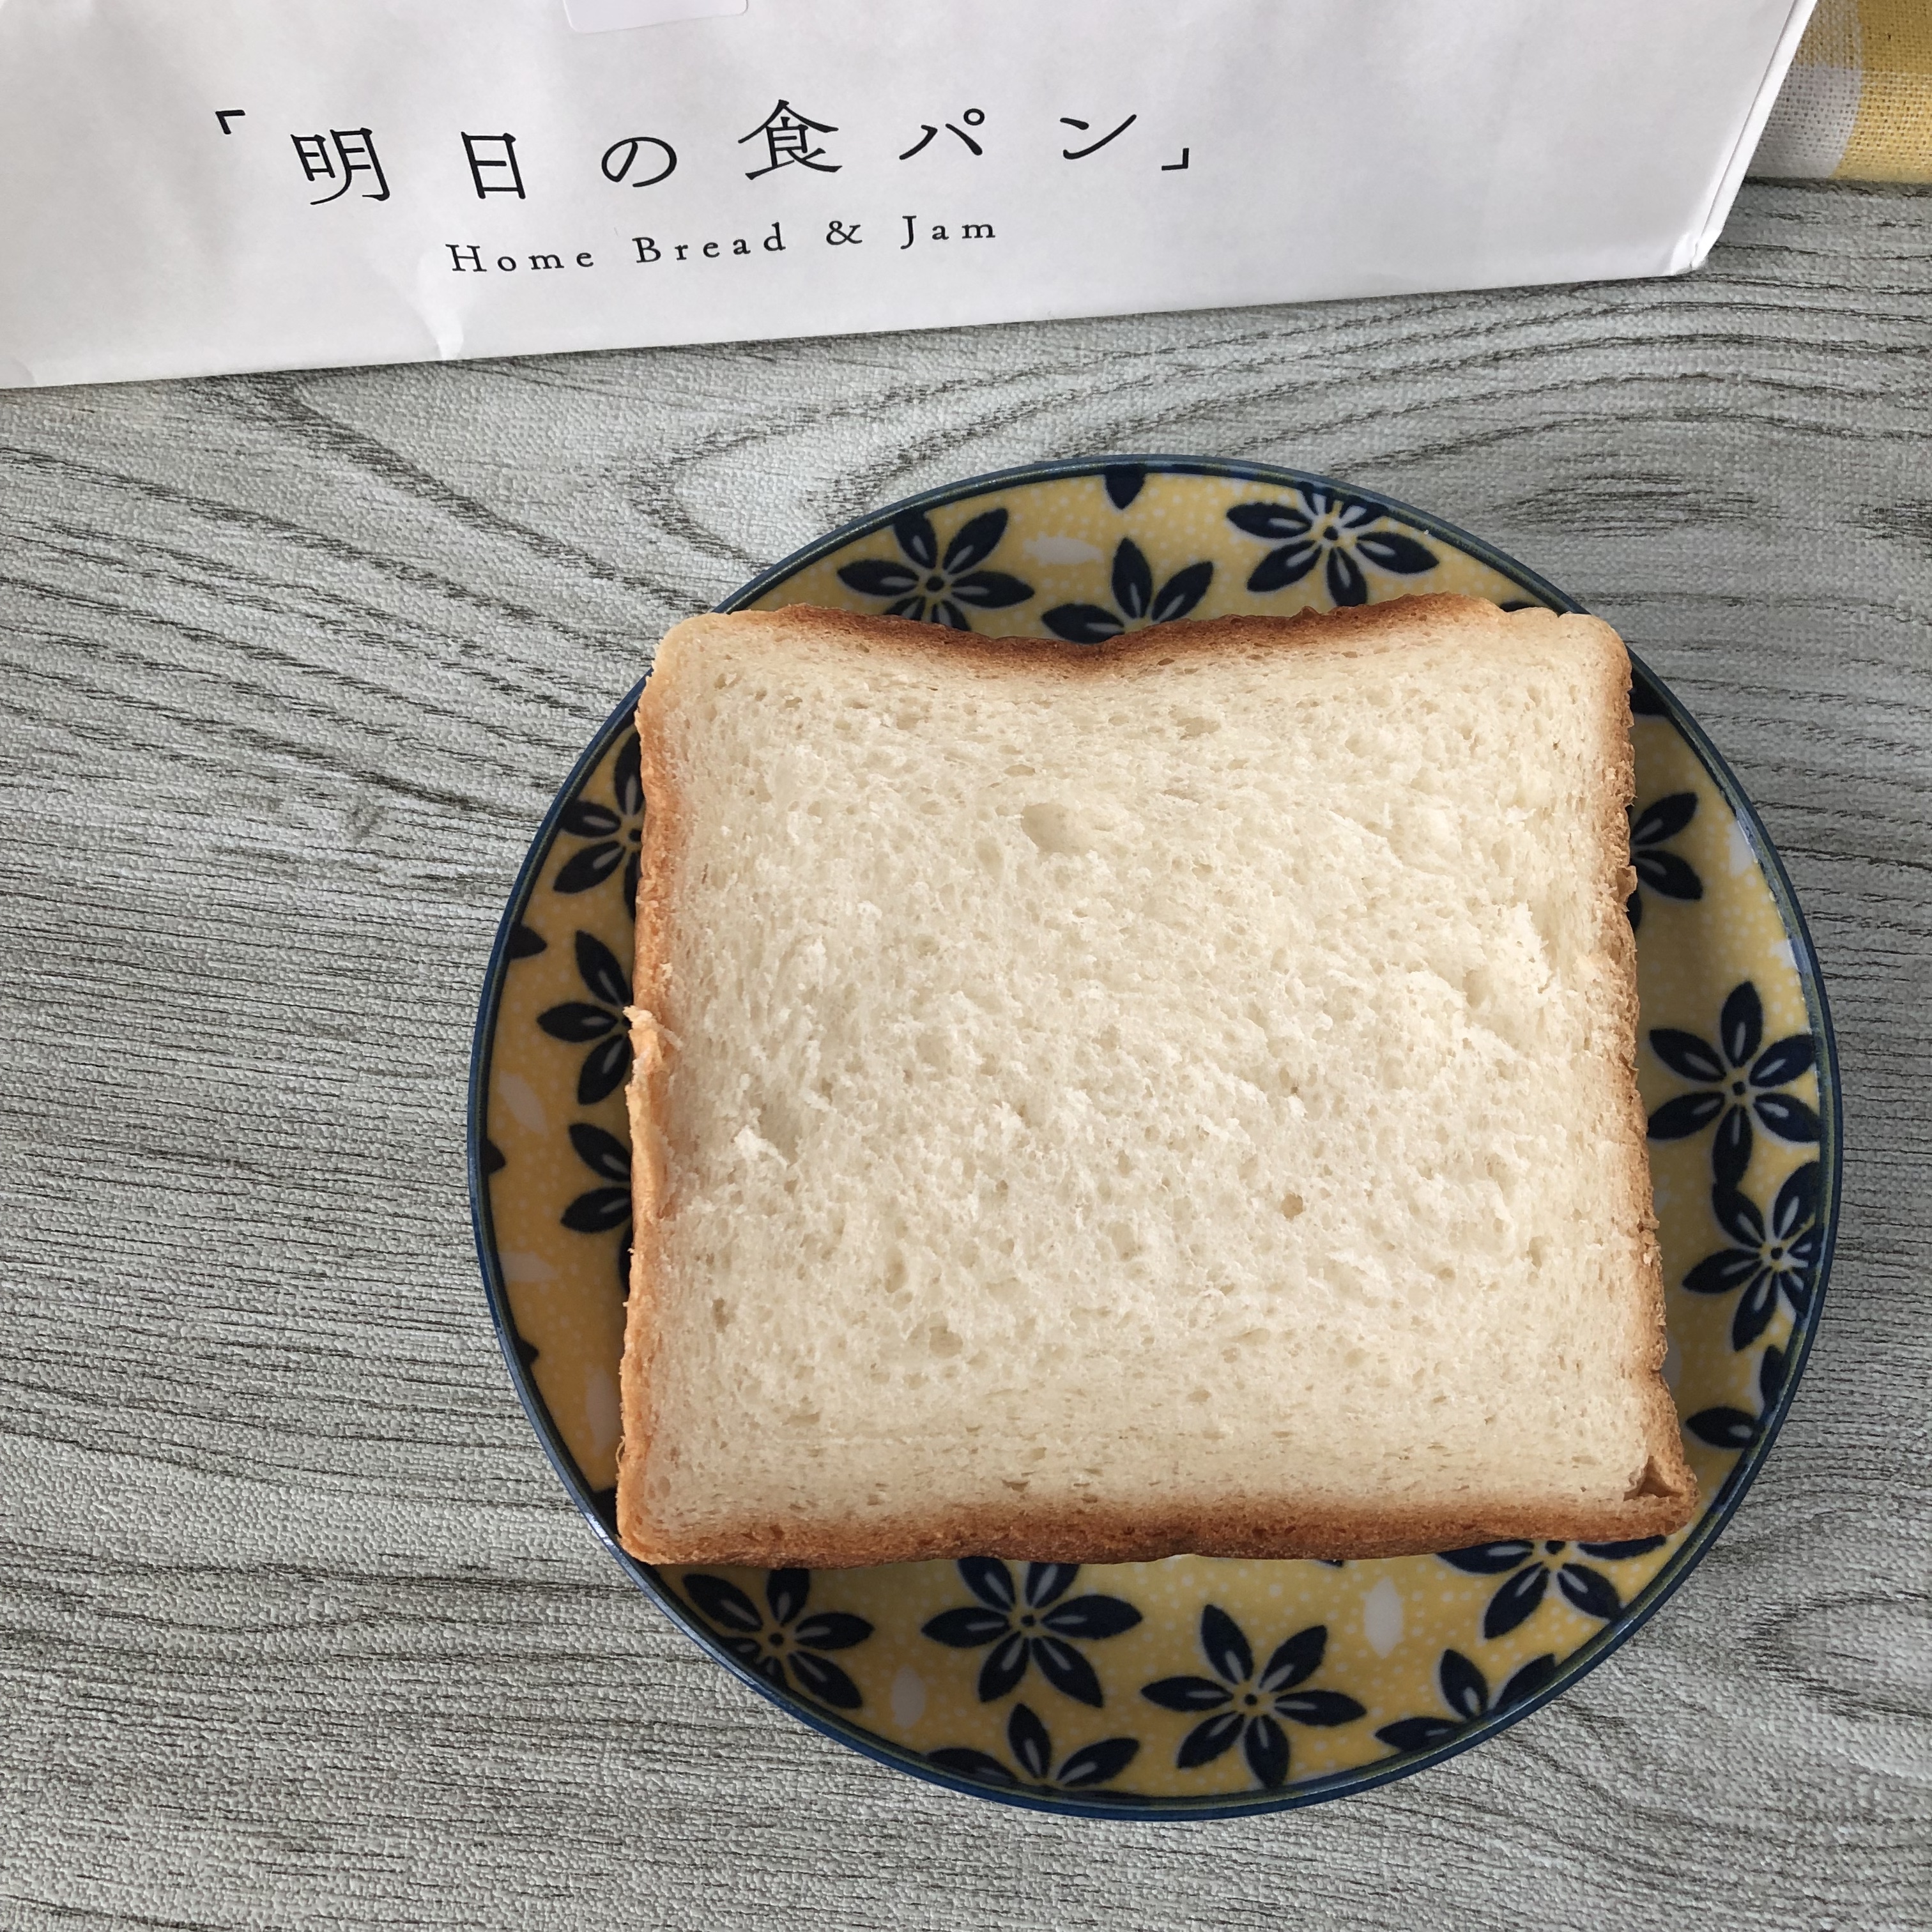 「明日の食パン」の「明日の食パン MU kodomo」(*^^*)